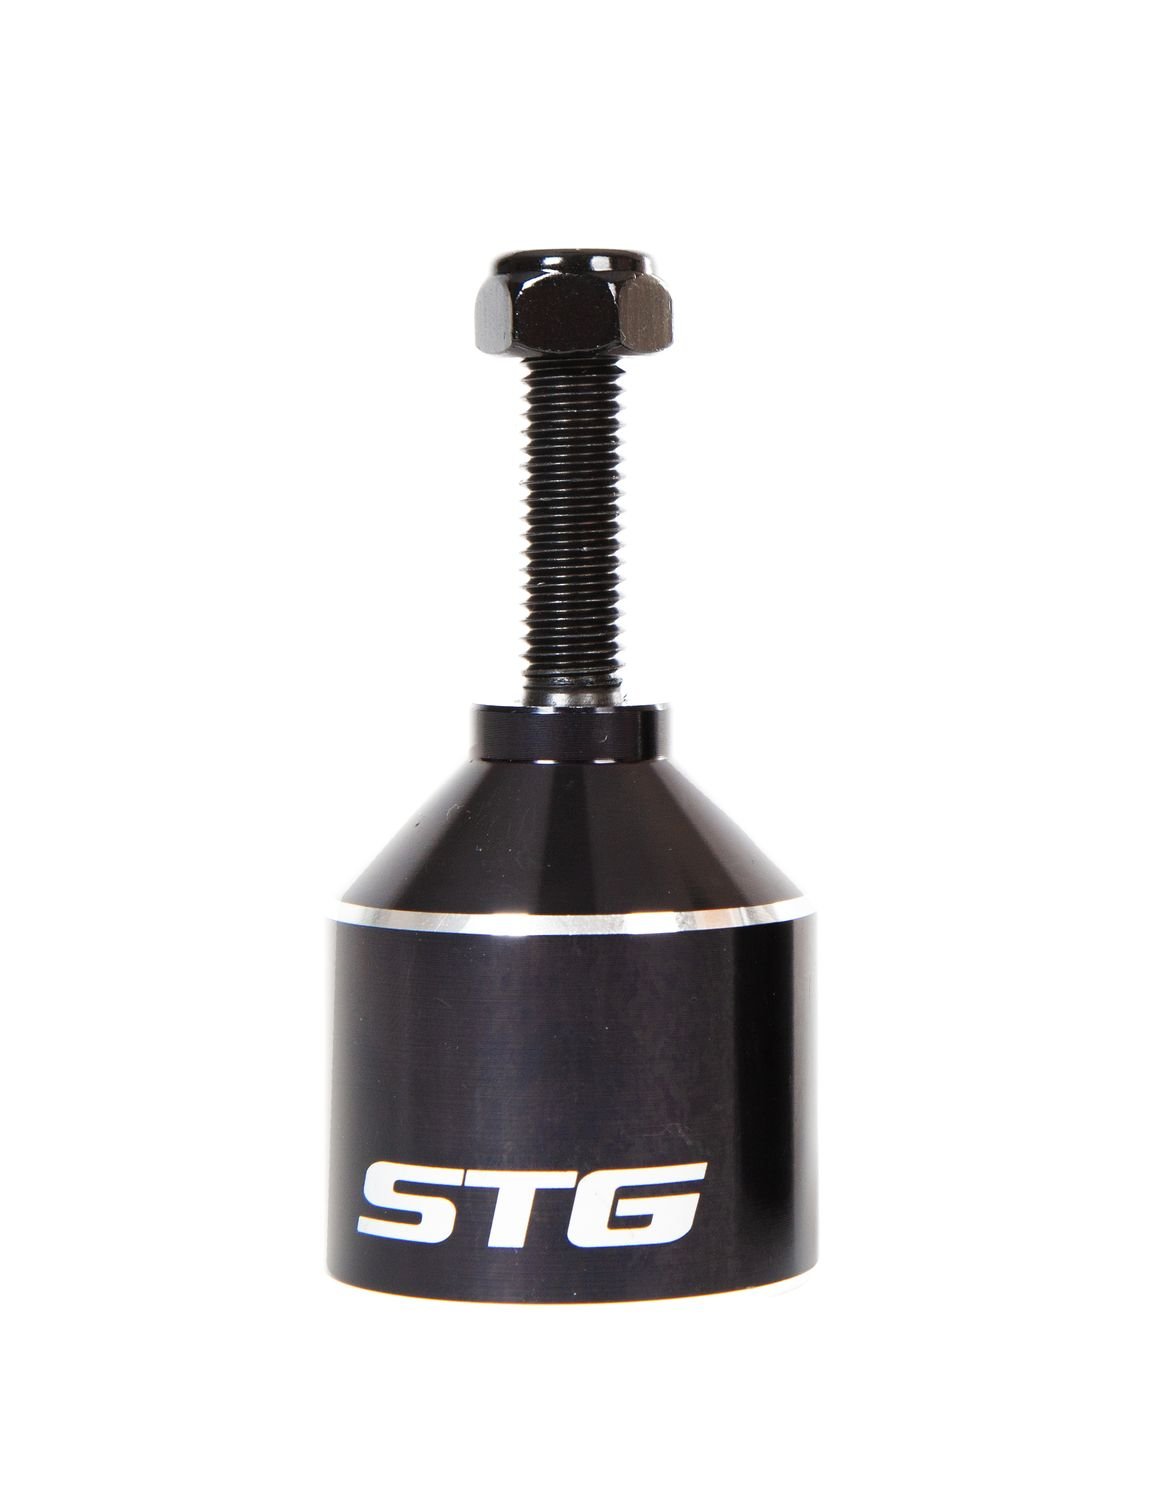 Пеги STG для трюкового самоката с осью, 36 мм, алюминий, черный, Х99073 купить на ЖДБЗ.ру - фотография № 2